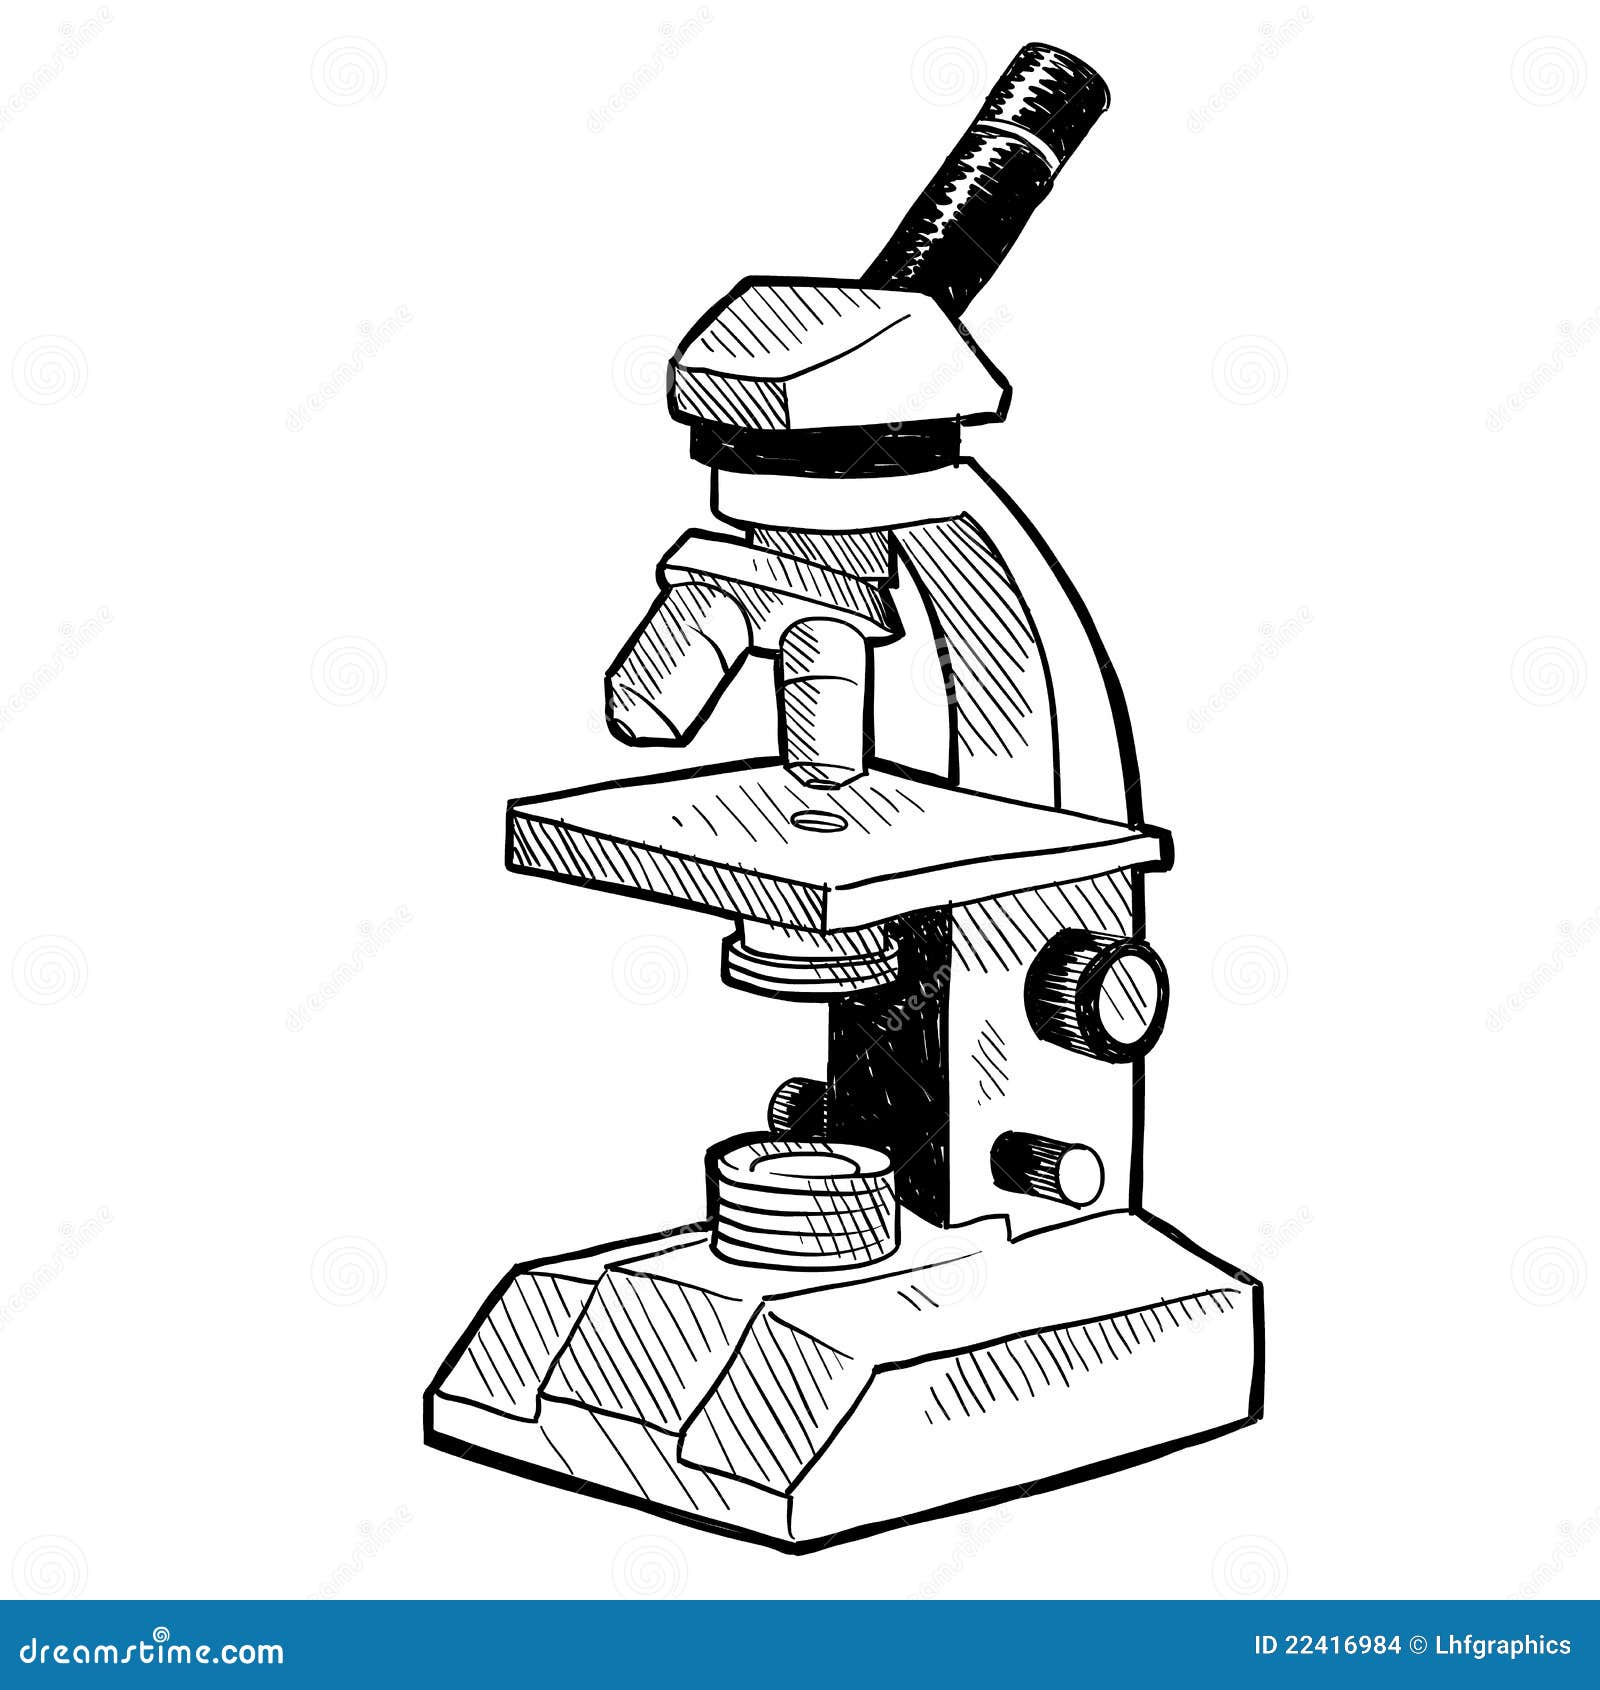 microscope drawing